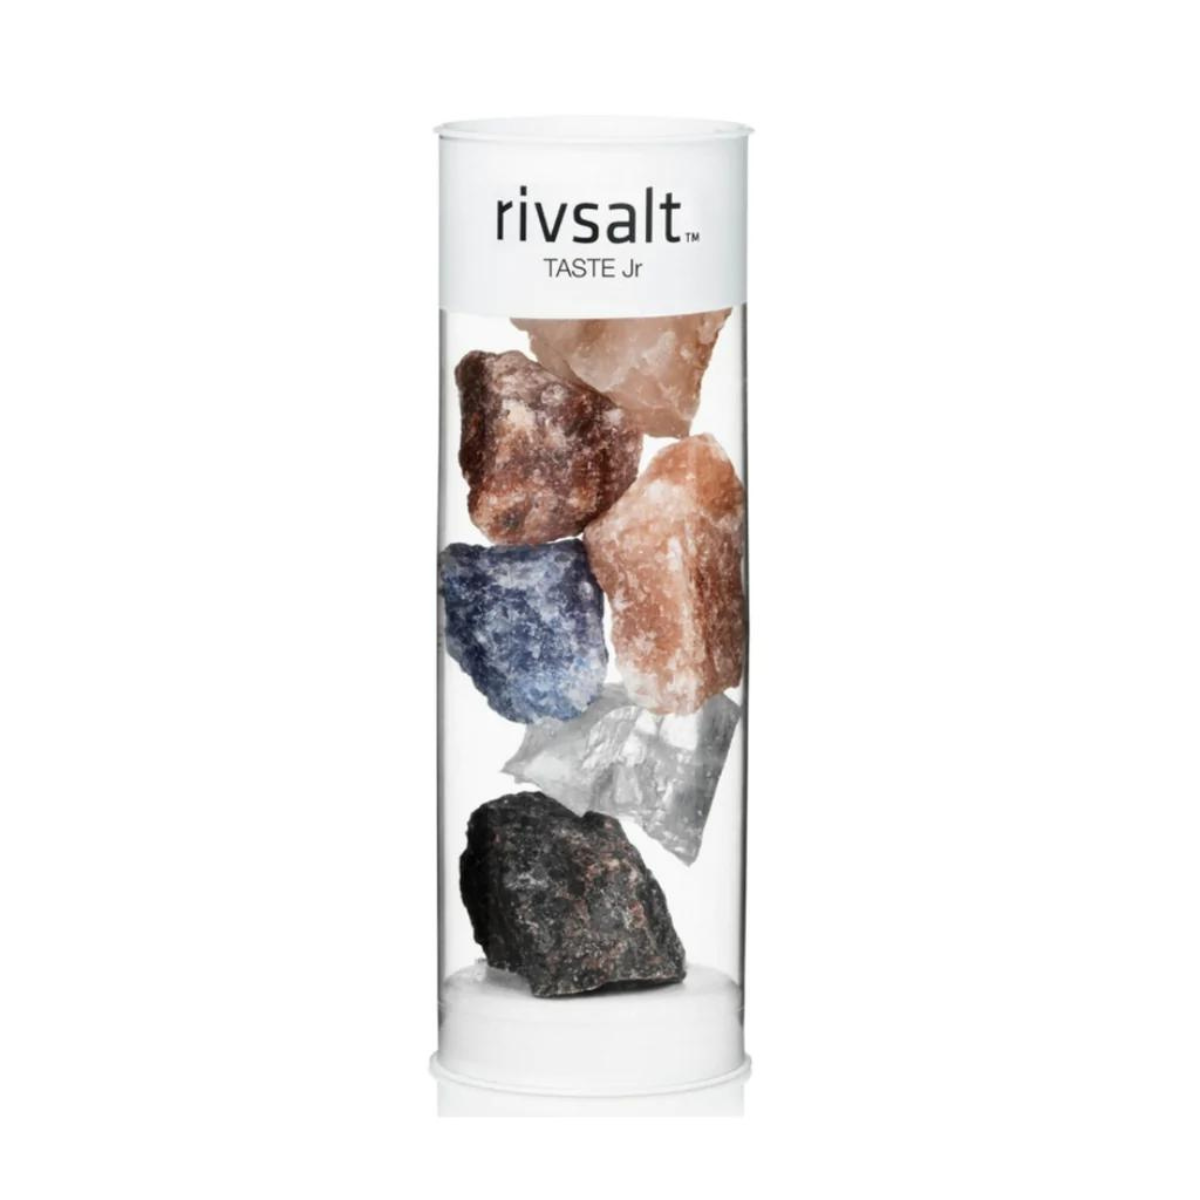 RIVSALT - Taste Jr 6 Pieces Rock Salt Varieties Refill